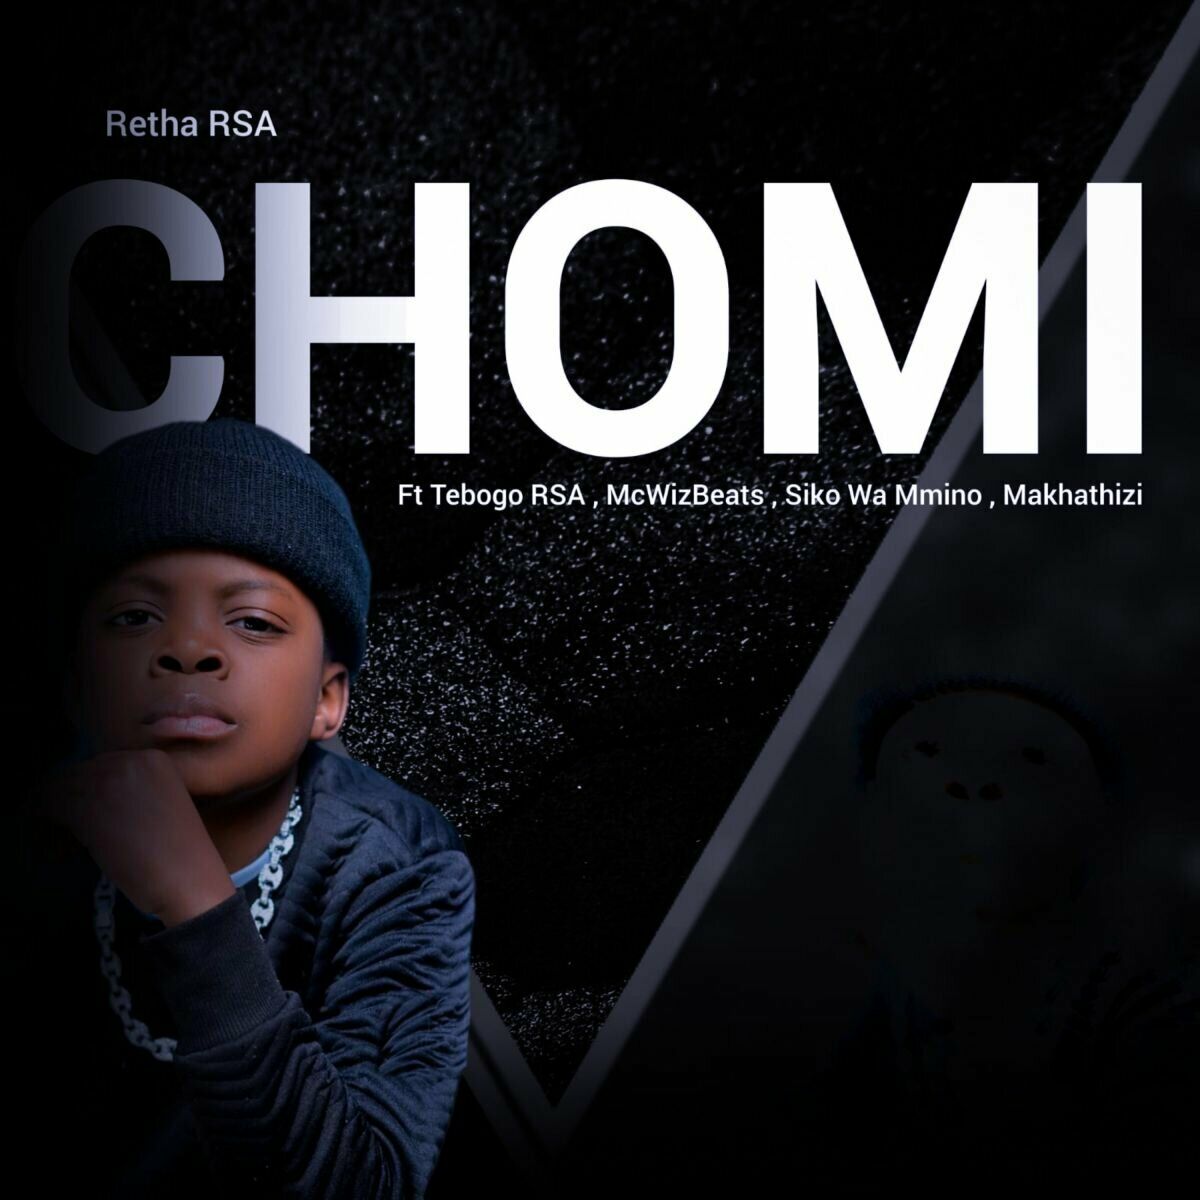 Retha RSA – Chomi (Original Mix) [feat. McWizBeats , Tebogo RSA, Siko wa Mmino & Makathizi]